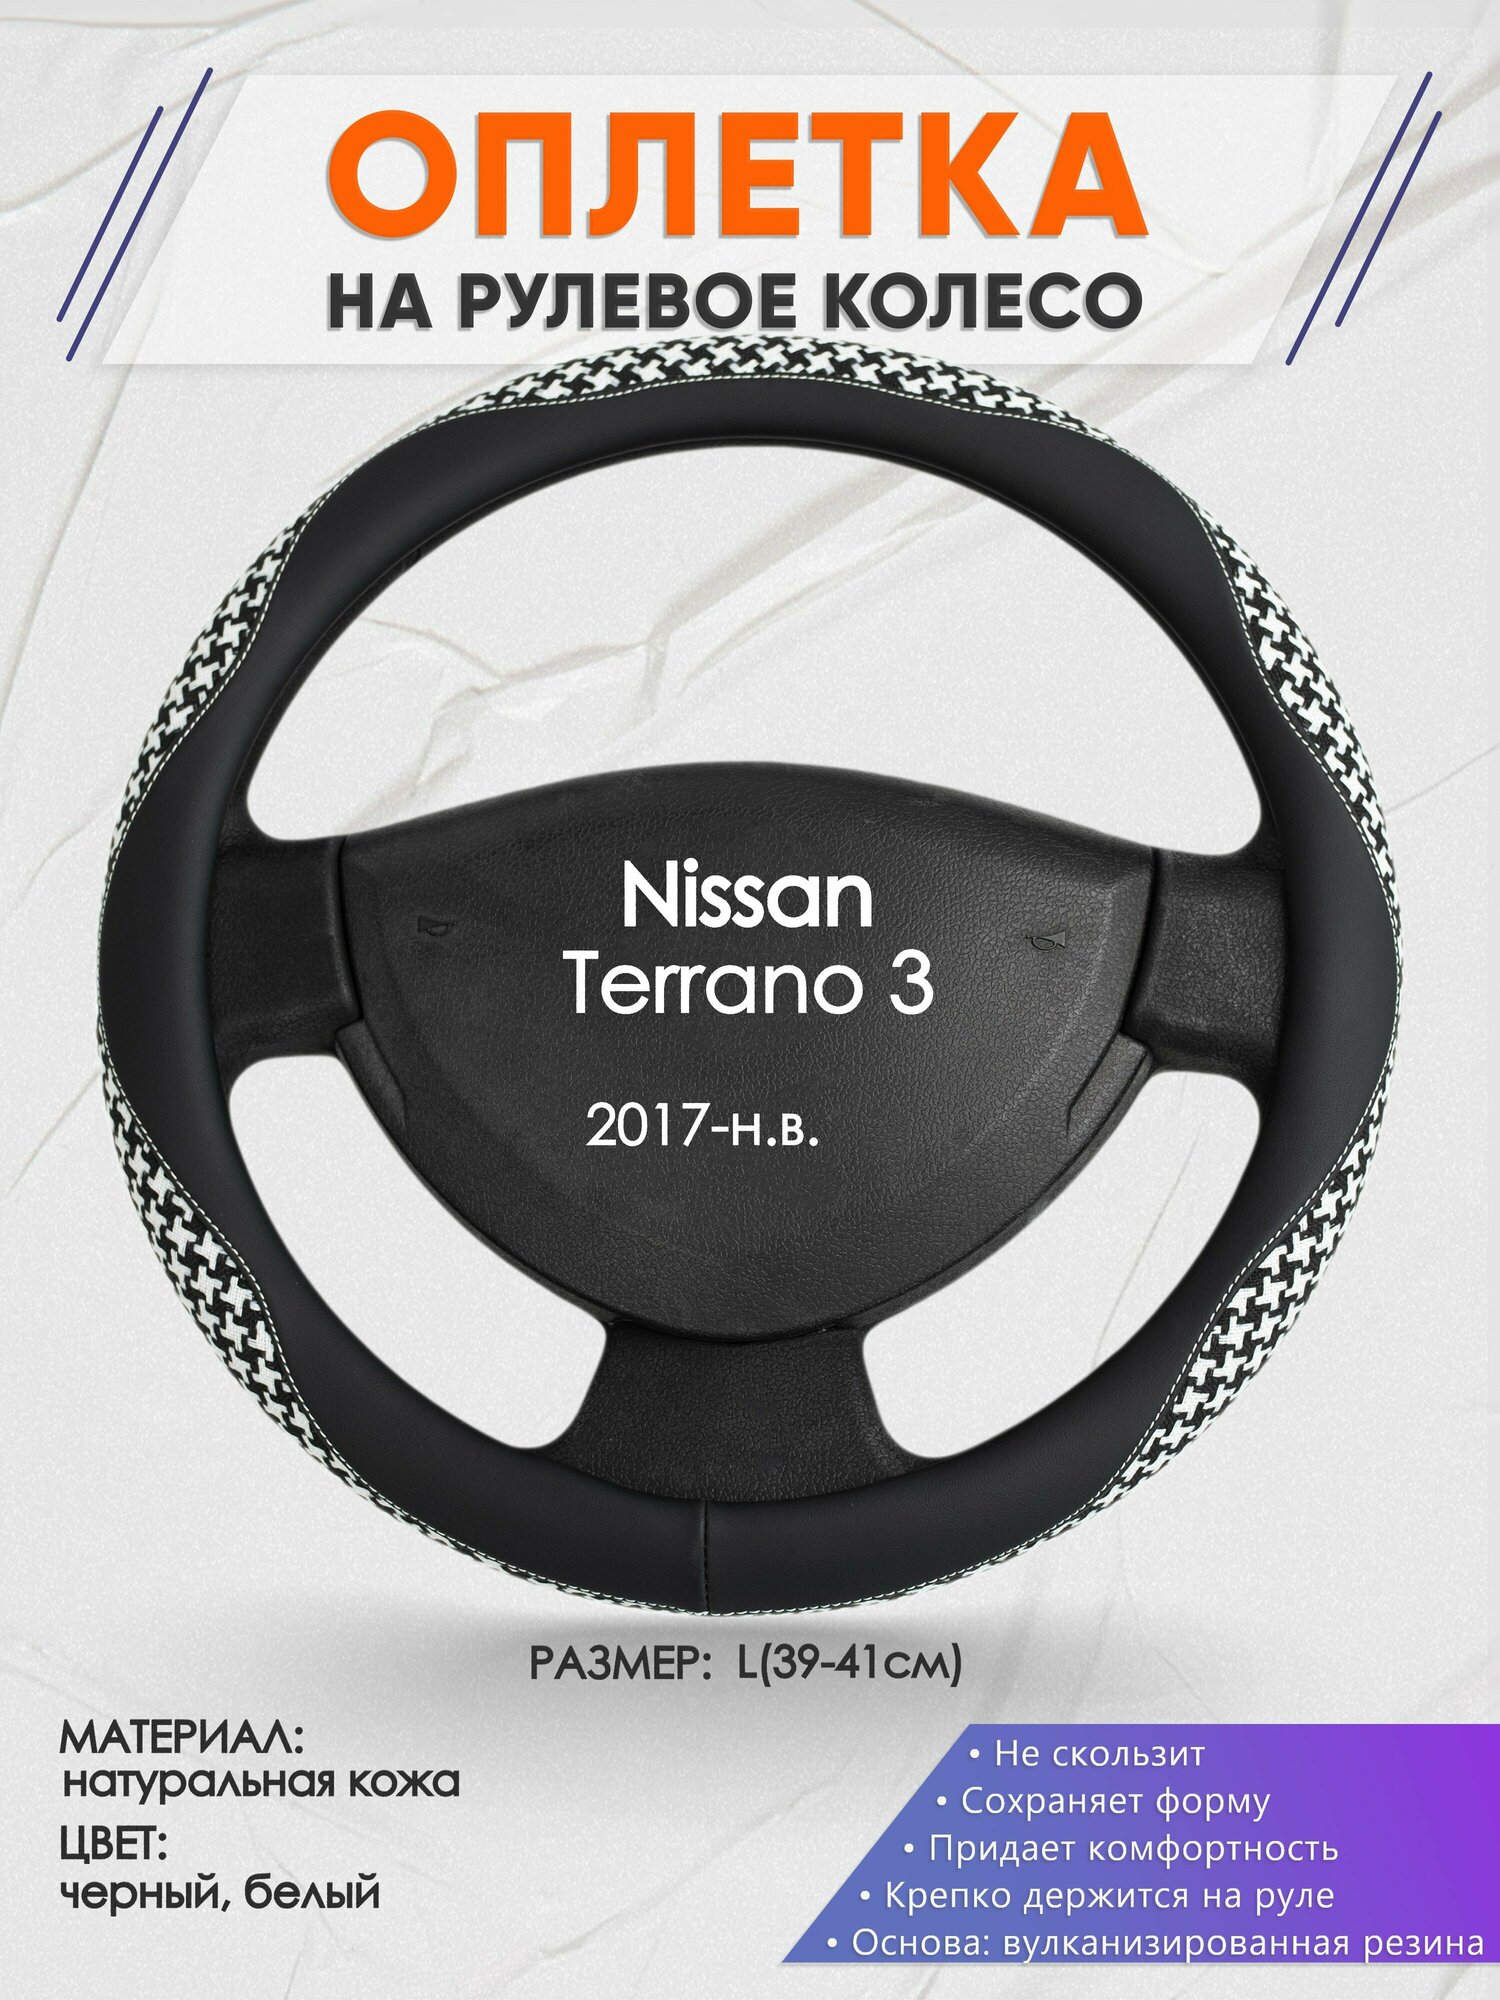 Оплетка на руль для Nissan Terrano 3(Ниссан Террано 3) 2017-н. в, L(39-41см), Натуральная кожа 21